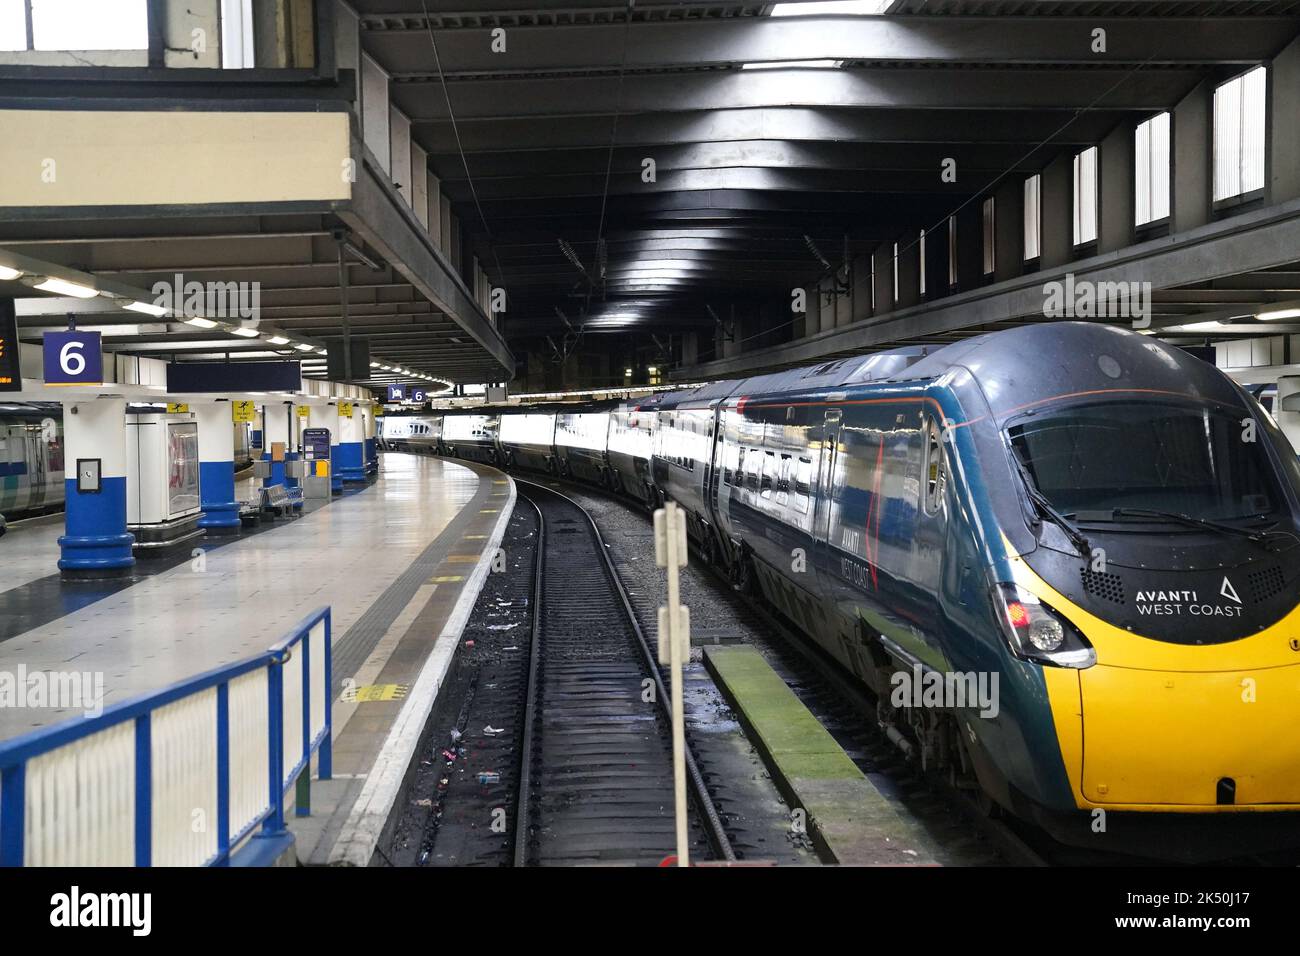 Una piattaforma vuota e un treno fisso alla stazione di Kings Cross a Londra, come membri del sindacato dei conducenti Aslef e della Transport Salaried Staffs Association (TSSA) vanno in sciopero. Data immagine: Mercoledì 5 ottobre 2022. Foto Stock